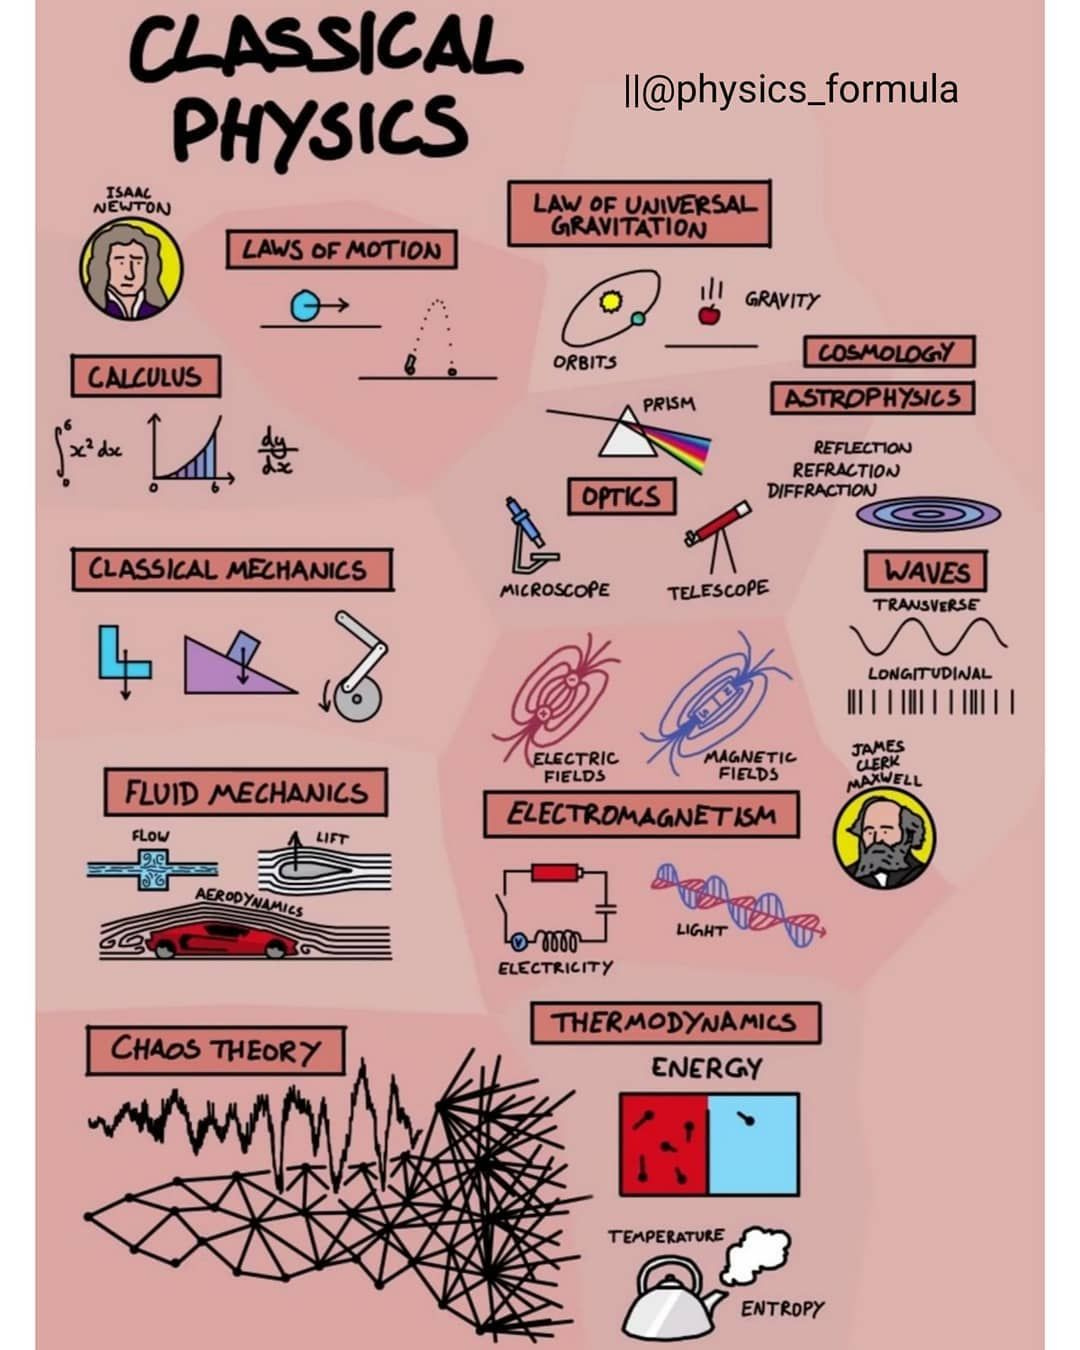 Pin by Mariana FloHe on ciencia | Physics classroom, Classical physics,  Learn physics